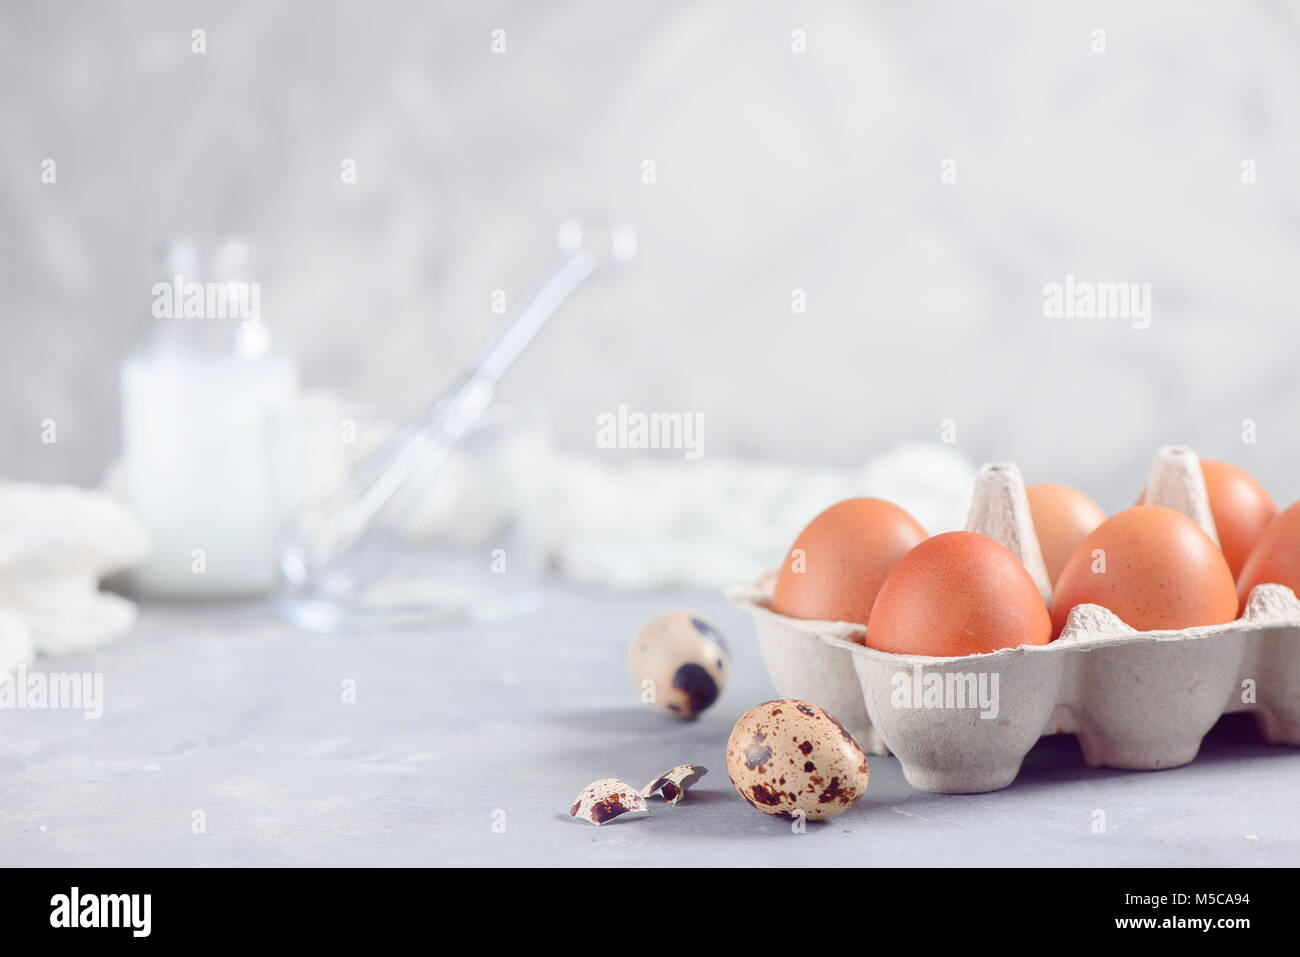 Foglio di carta cartone di uova di colore marrone su sfondo chiaro con uova di quaglia, frusta e gli ingredienti per la cottura di Pasqua. Elevato La chiave dello sfondo con copia spazio. Foto Stock